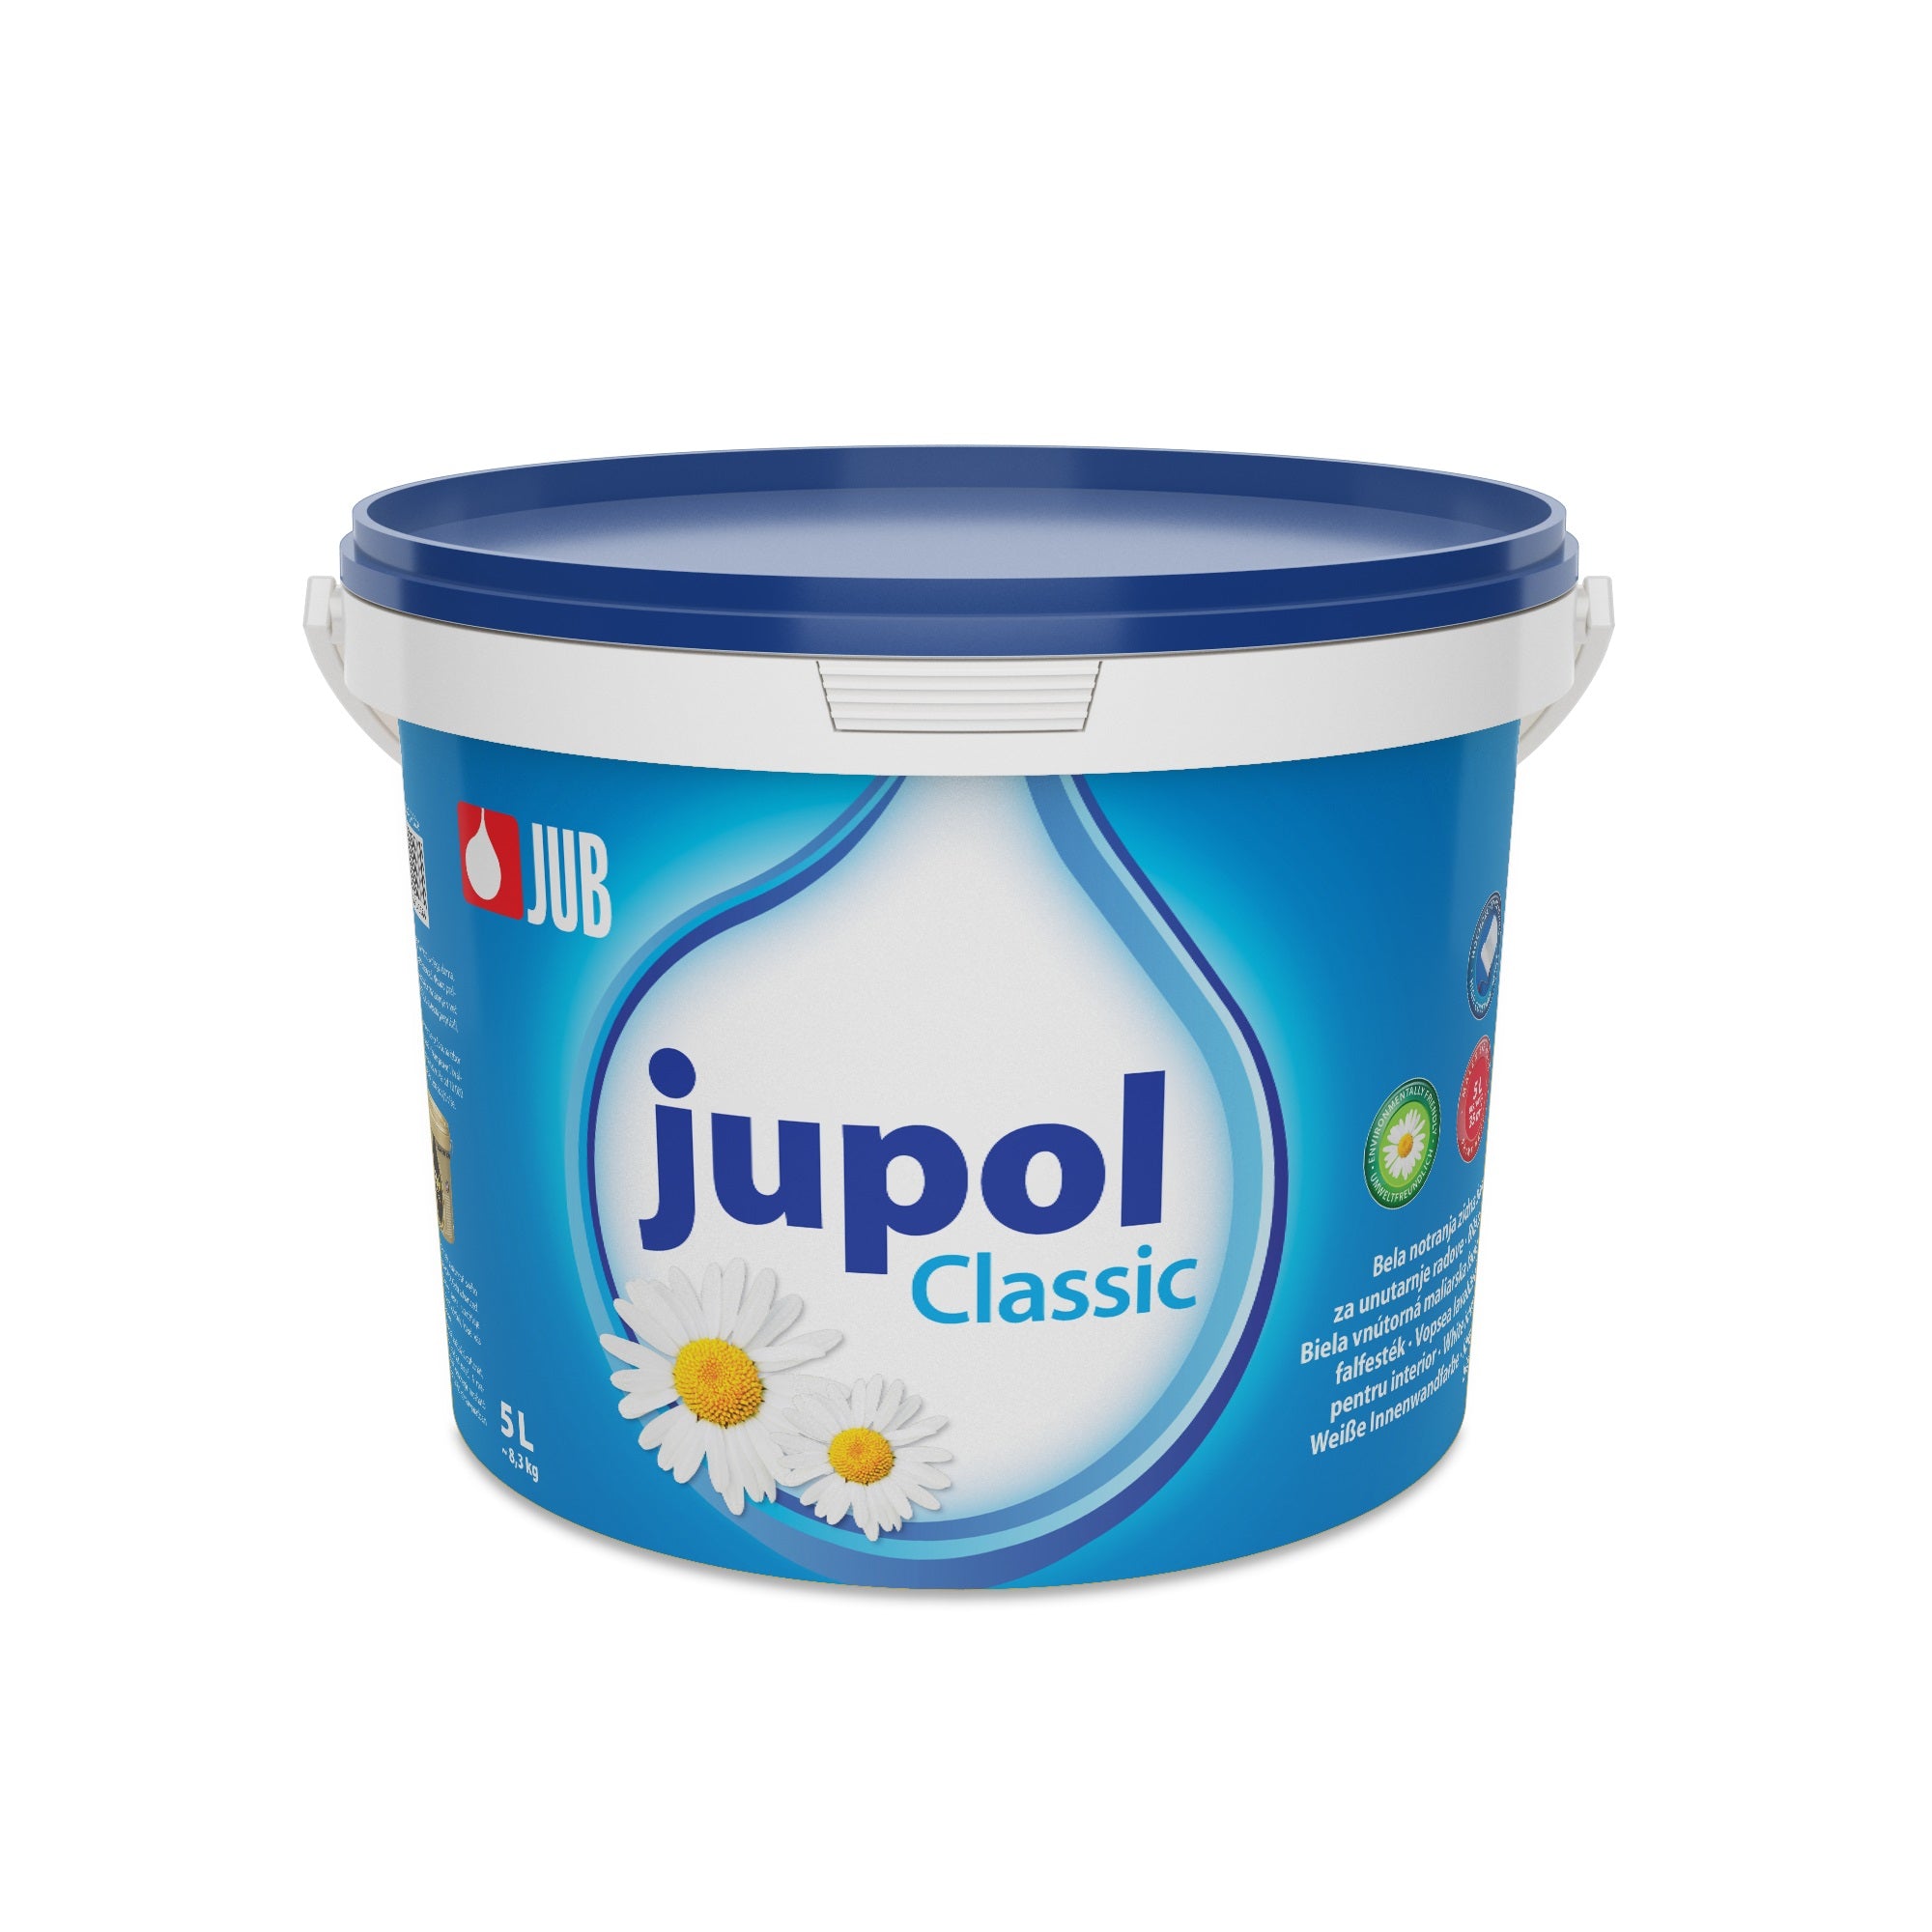 JUB JUPOL Classic bílá vnitřní malířská barva 5 l